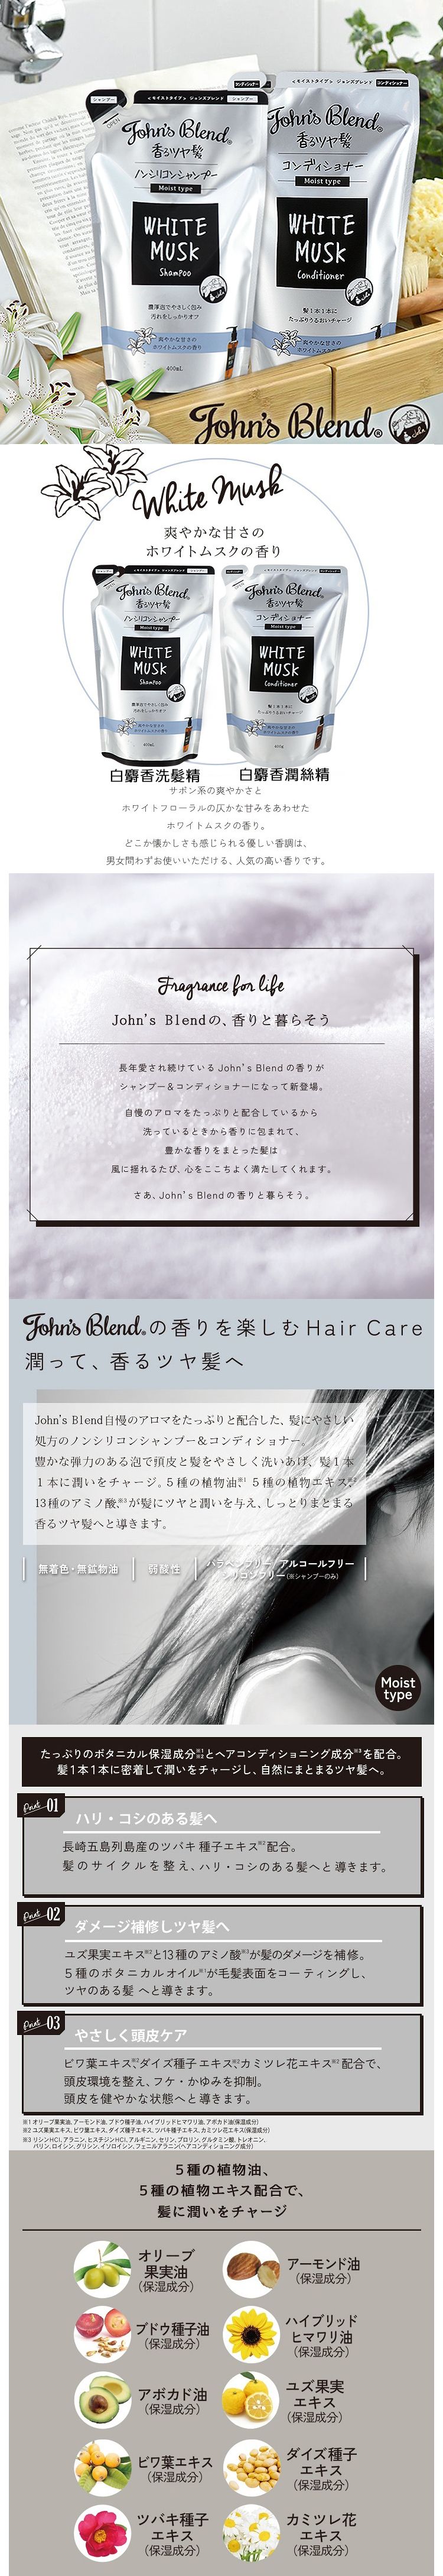 洗髮精 頭髮清潔 japan 保濕 保濕 洗髮精